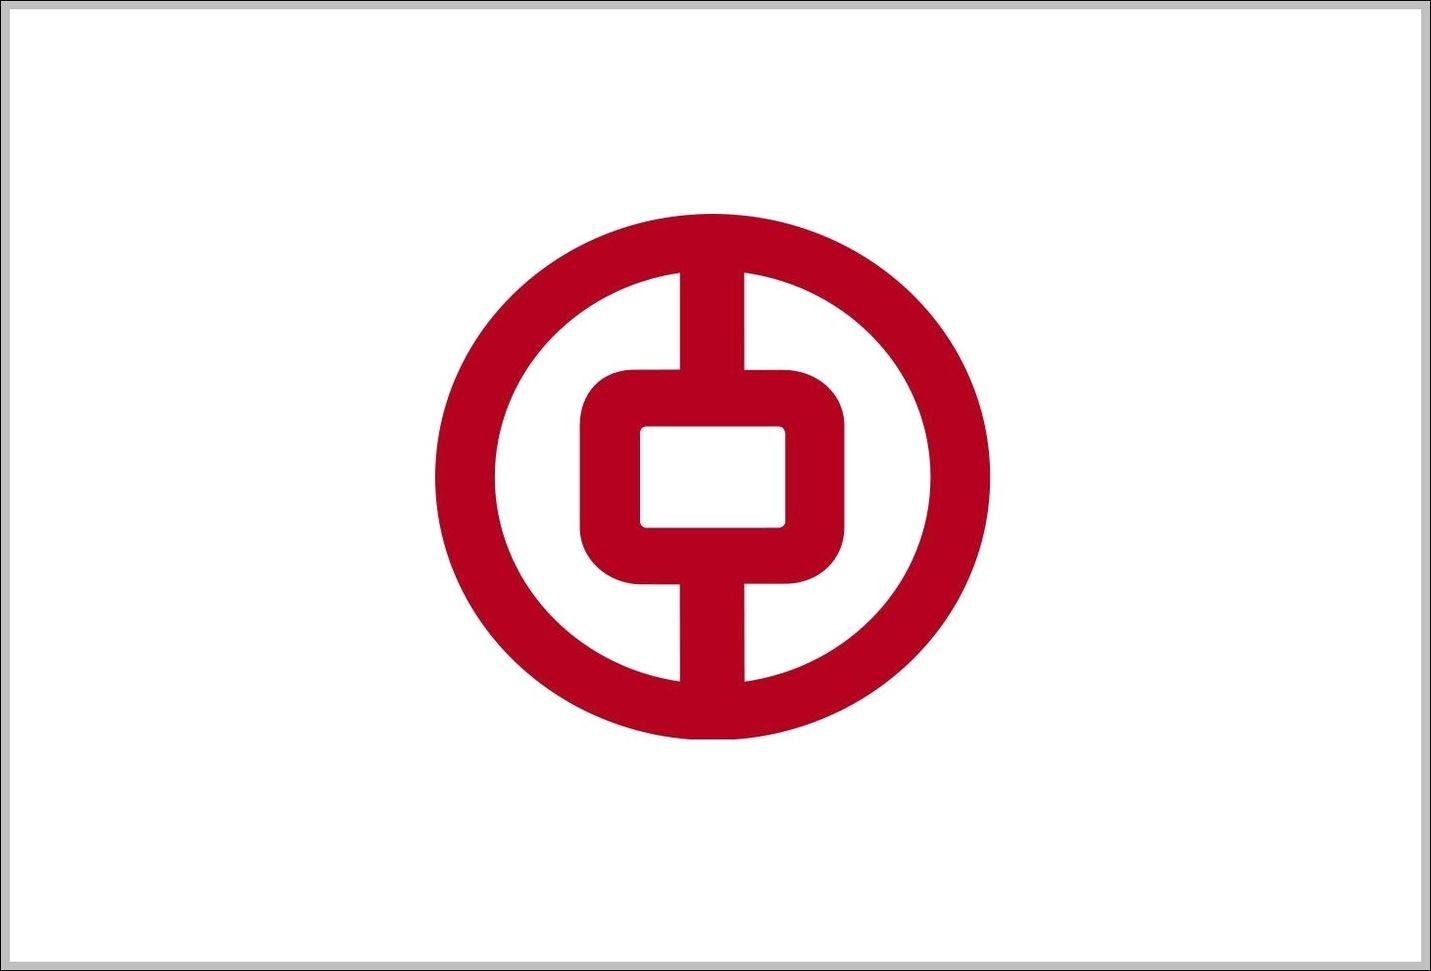 Bank of China Logo - Bank of China logo | Logo Sign - Logos, Signs, Symbols, Trademarks ...